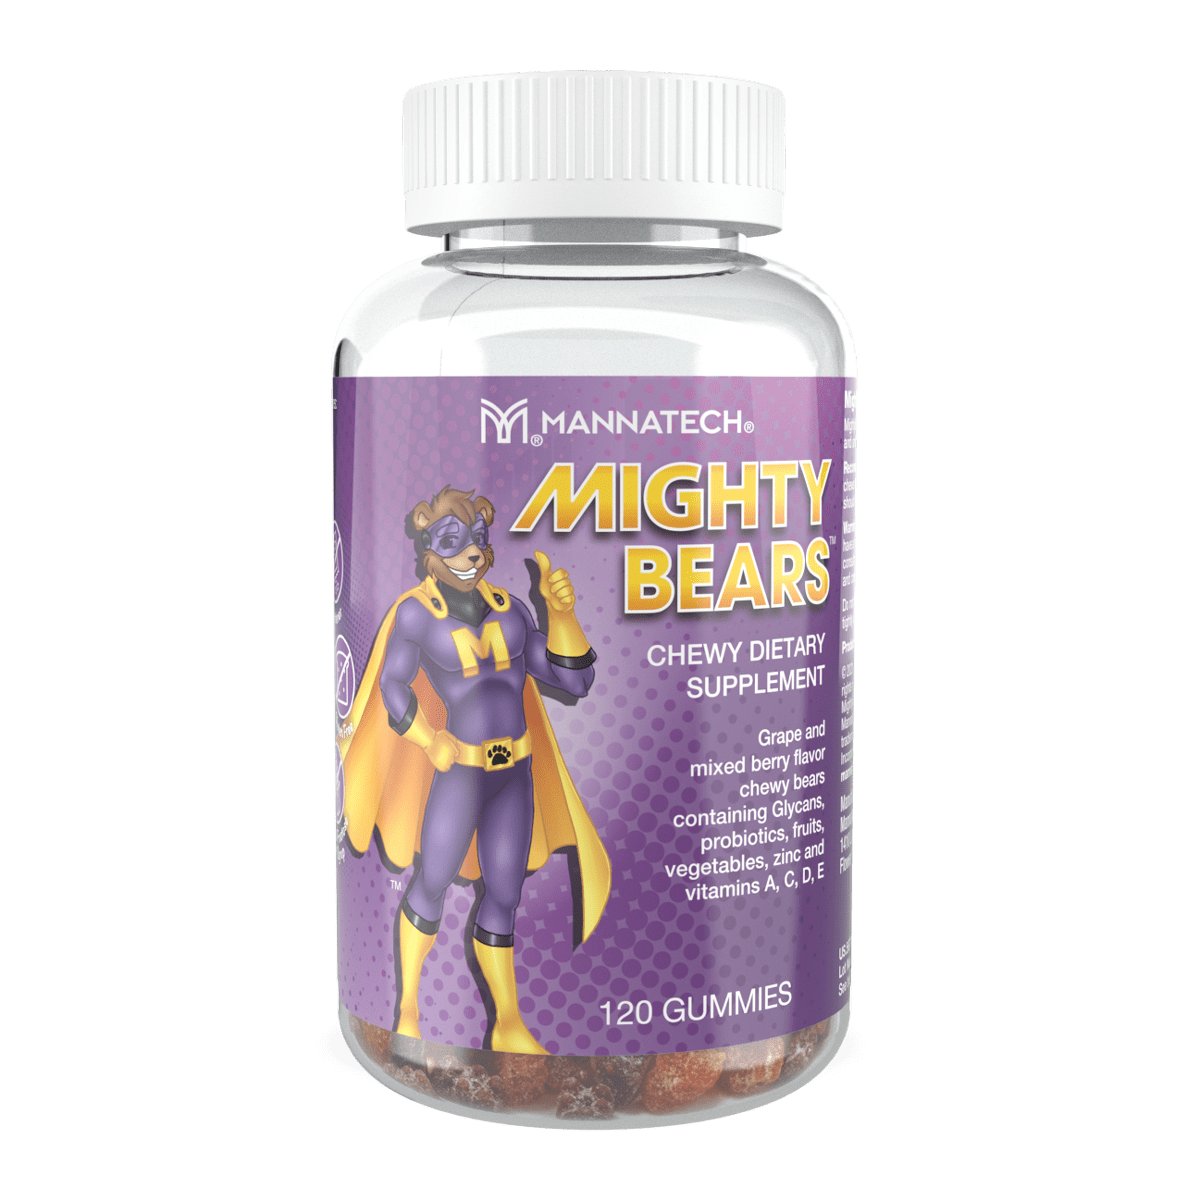 Mannatech MightyBears Grape Berry Flavor Kids Antioxidant Gummies 120pc NEW